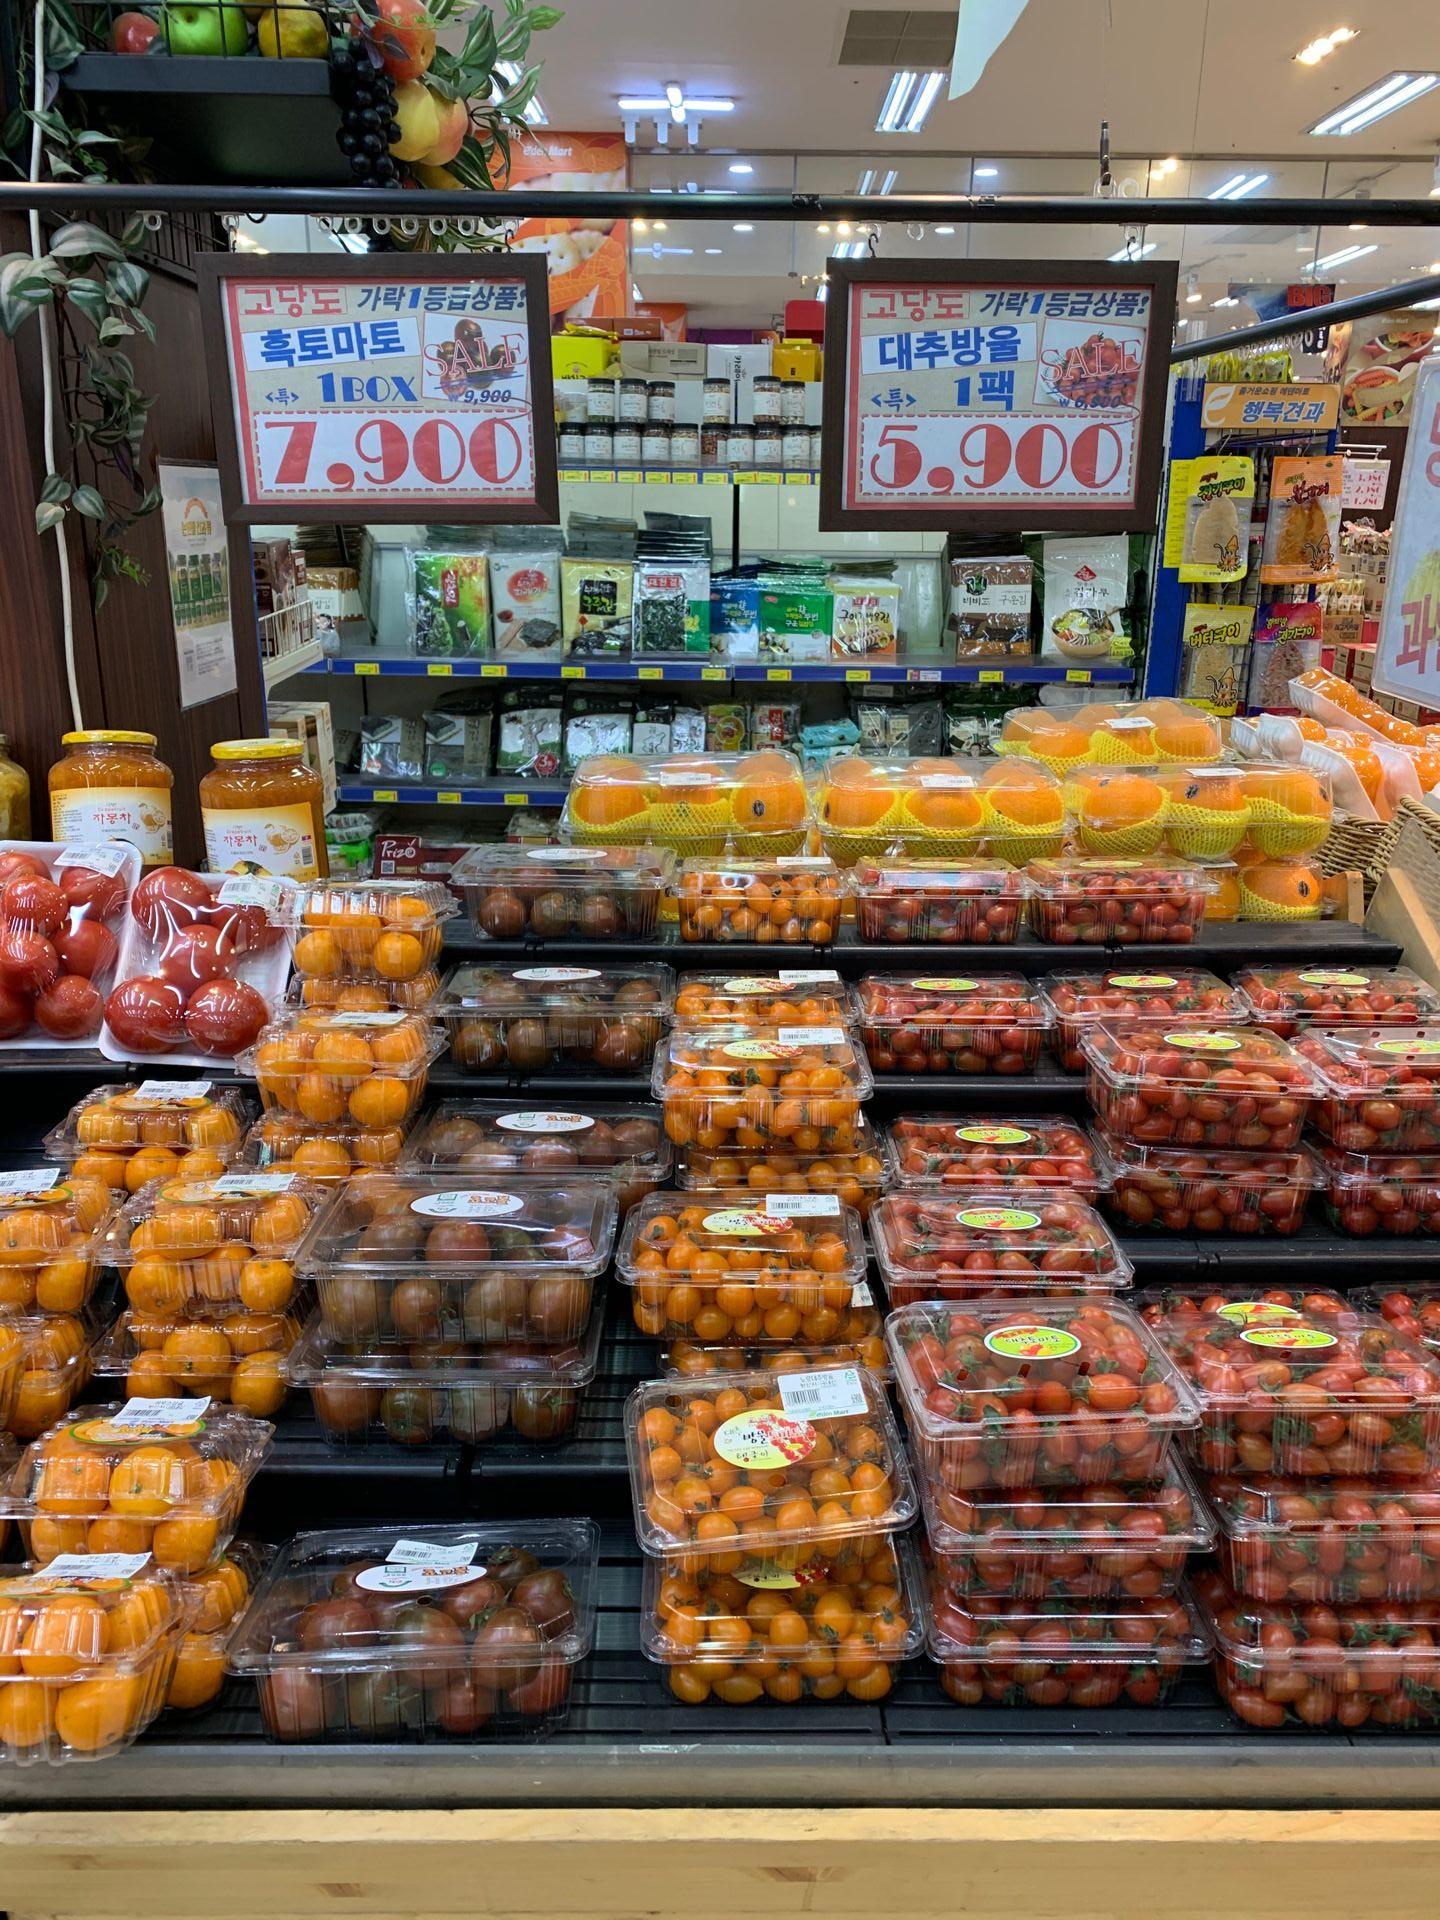 【2019購物清單】嚴選三大韓超市自家品牌好物 - Auntie A